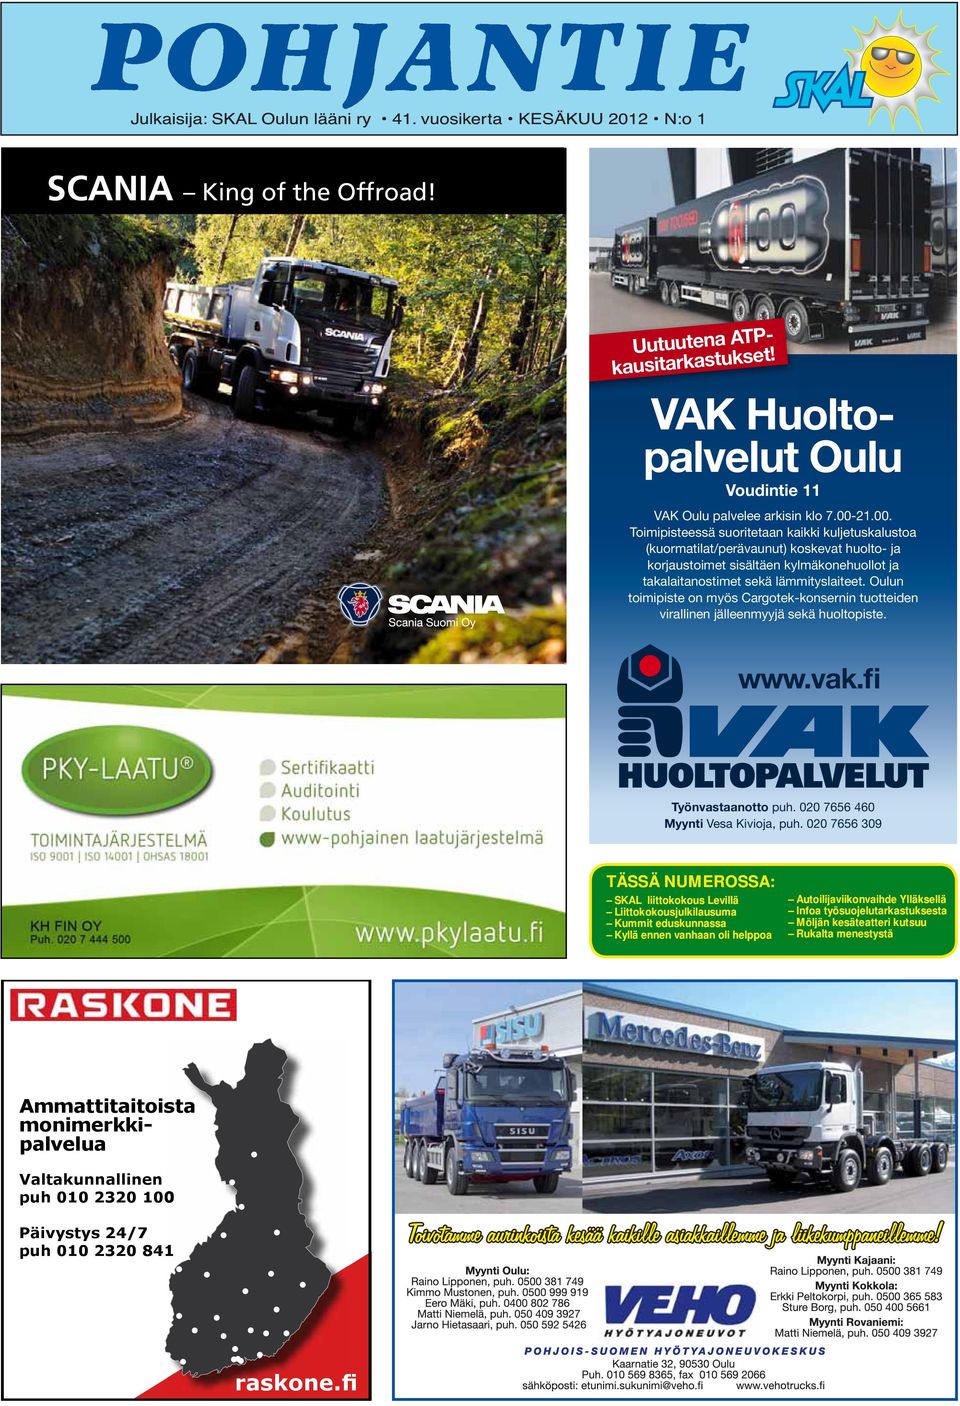 Oulun toimipiste on myös Cargotek-konsernin tuotteiden virallinen jälleenmyyjä sekä huoltopiste. www.vak.fi Työnvastaanotto puh. 020 7656 460 Myynti Vesa Kivioja, puh.